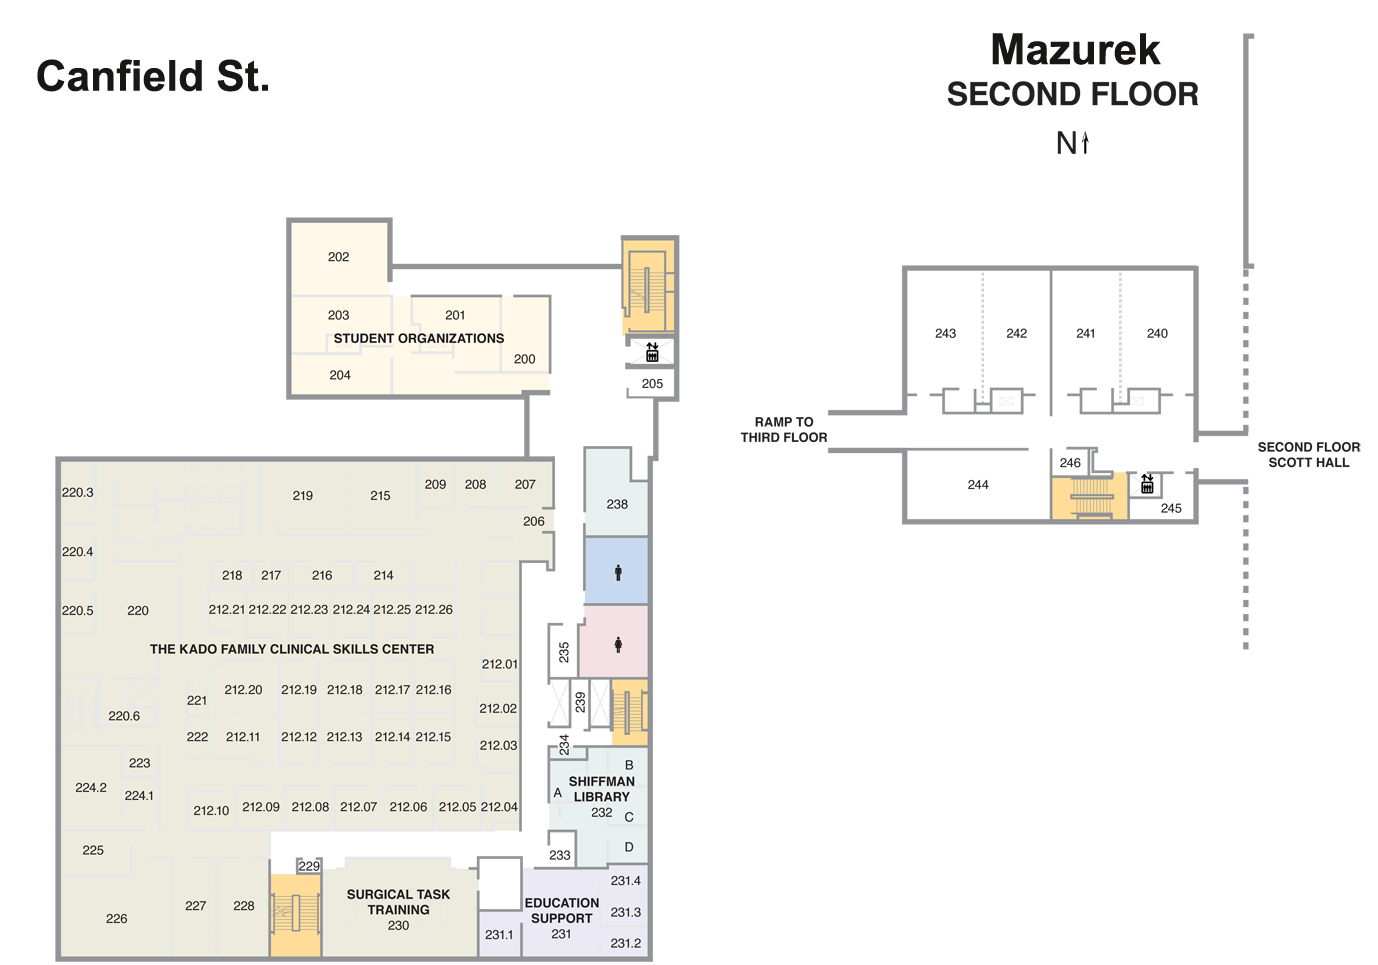 Mazurek - Second Floor